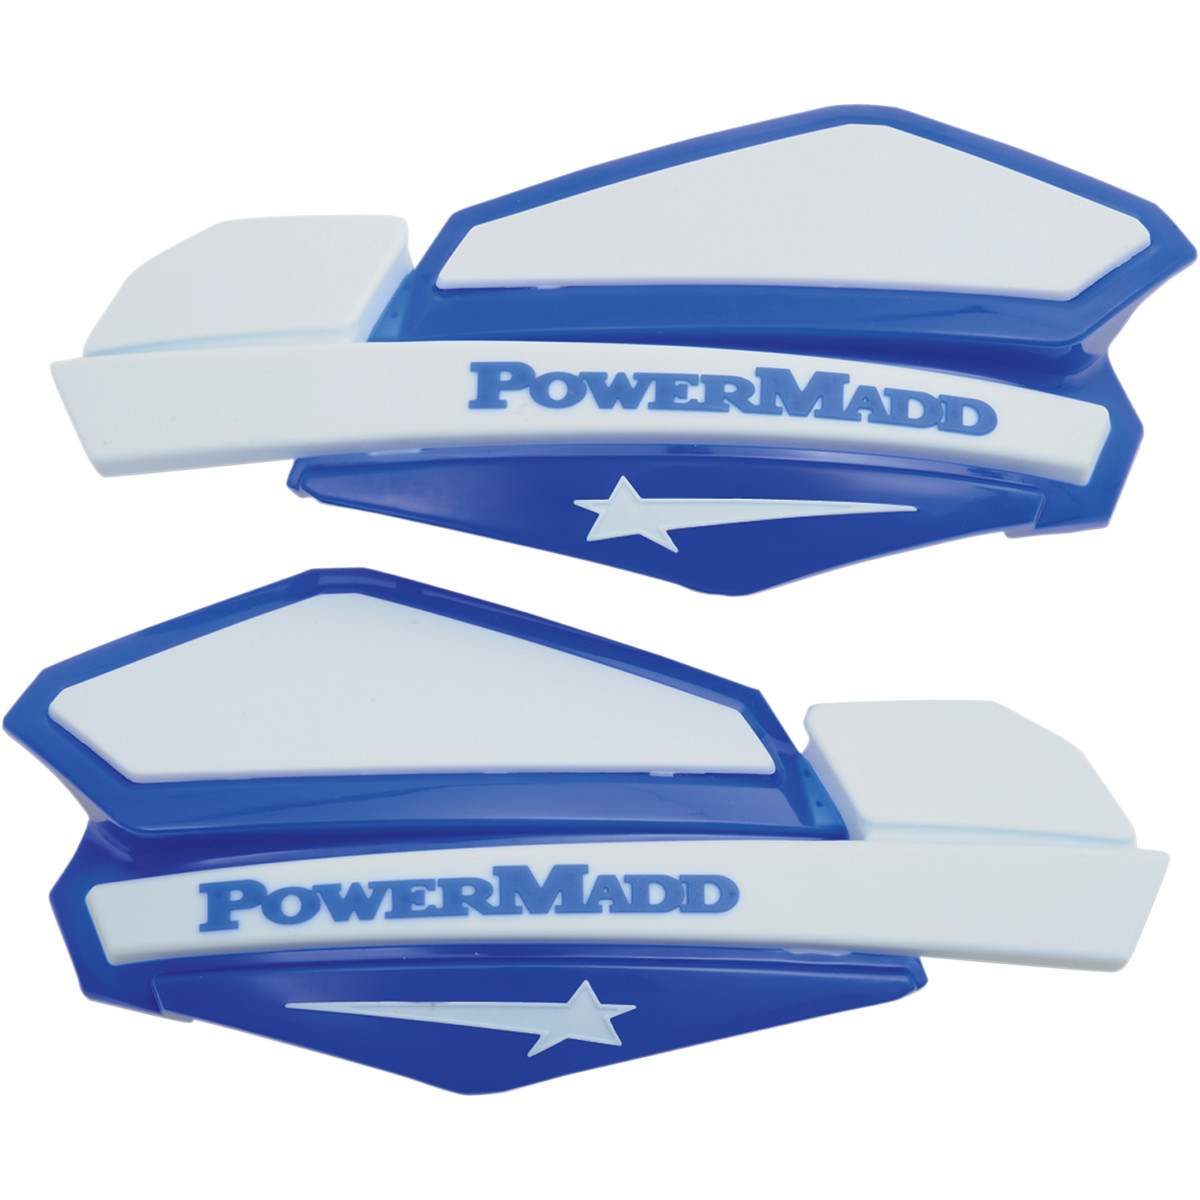 Ochranné kryty rúk Powermadd Star Series (modré/biele)